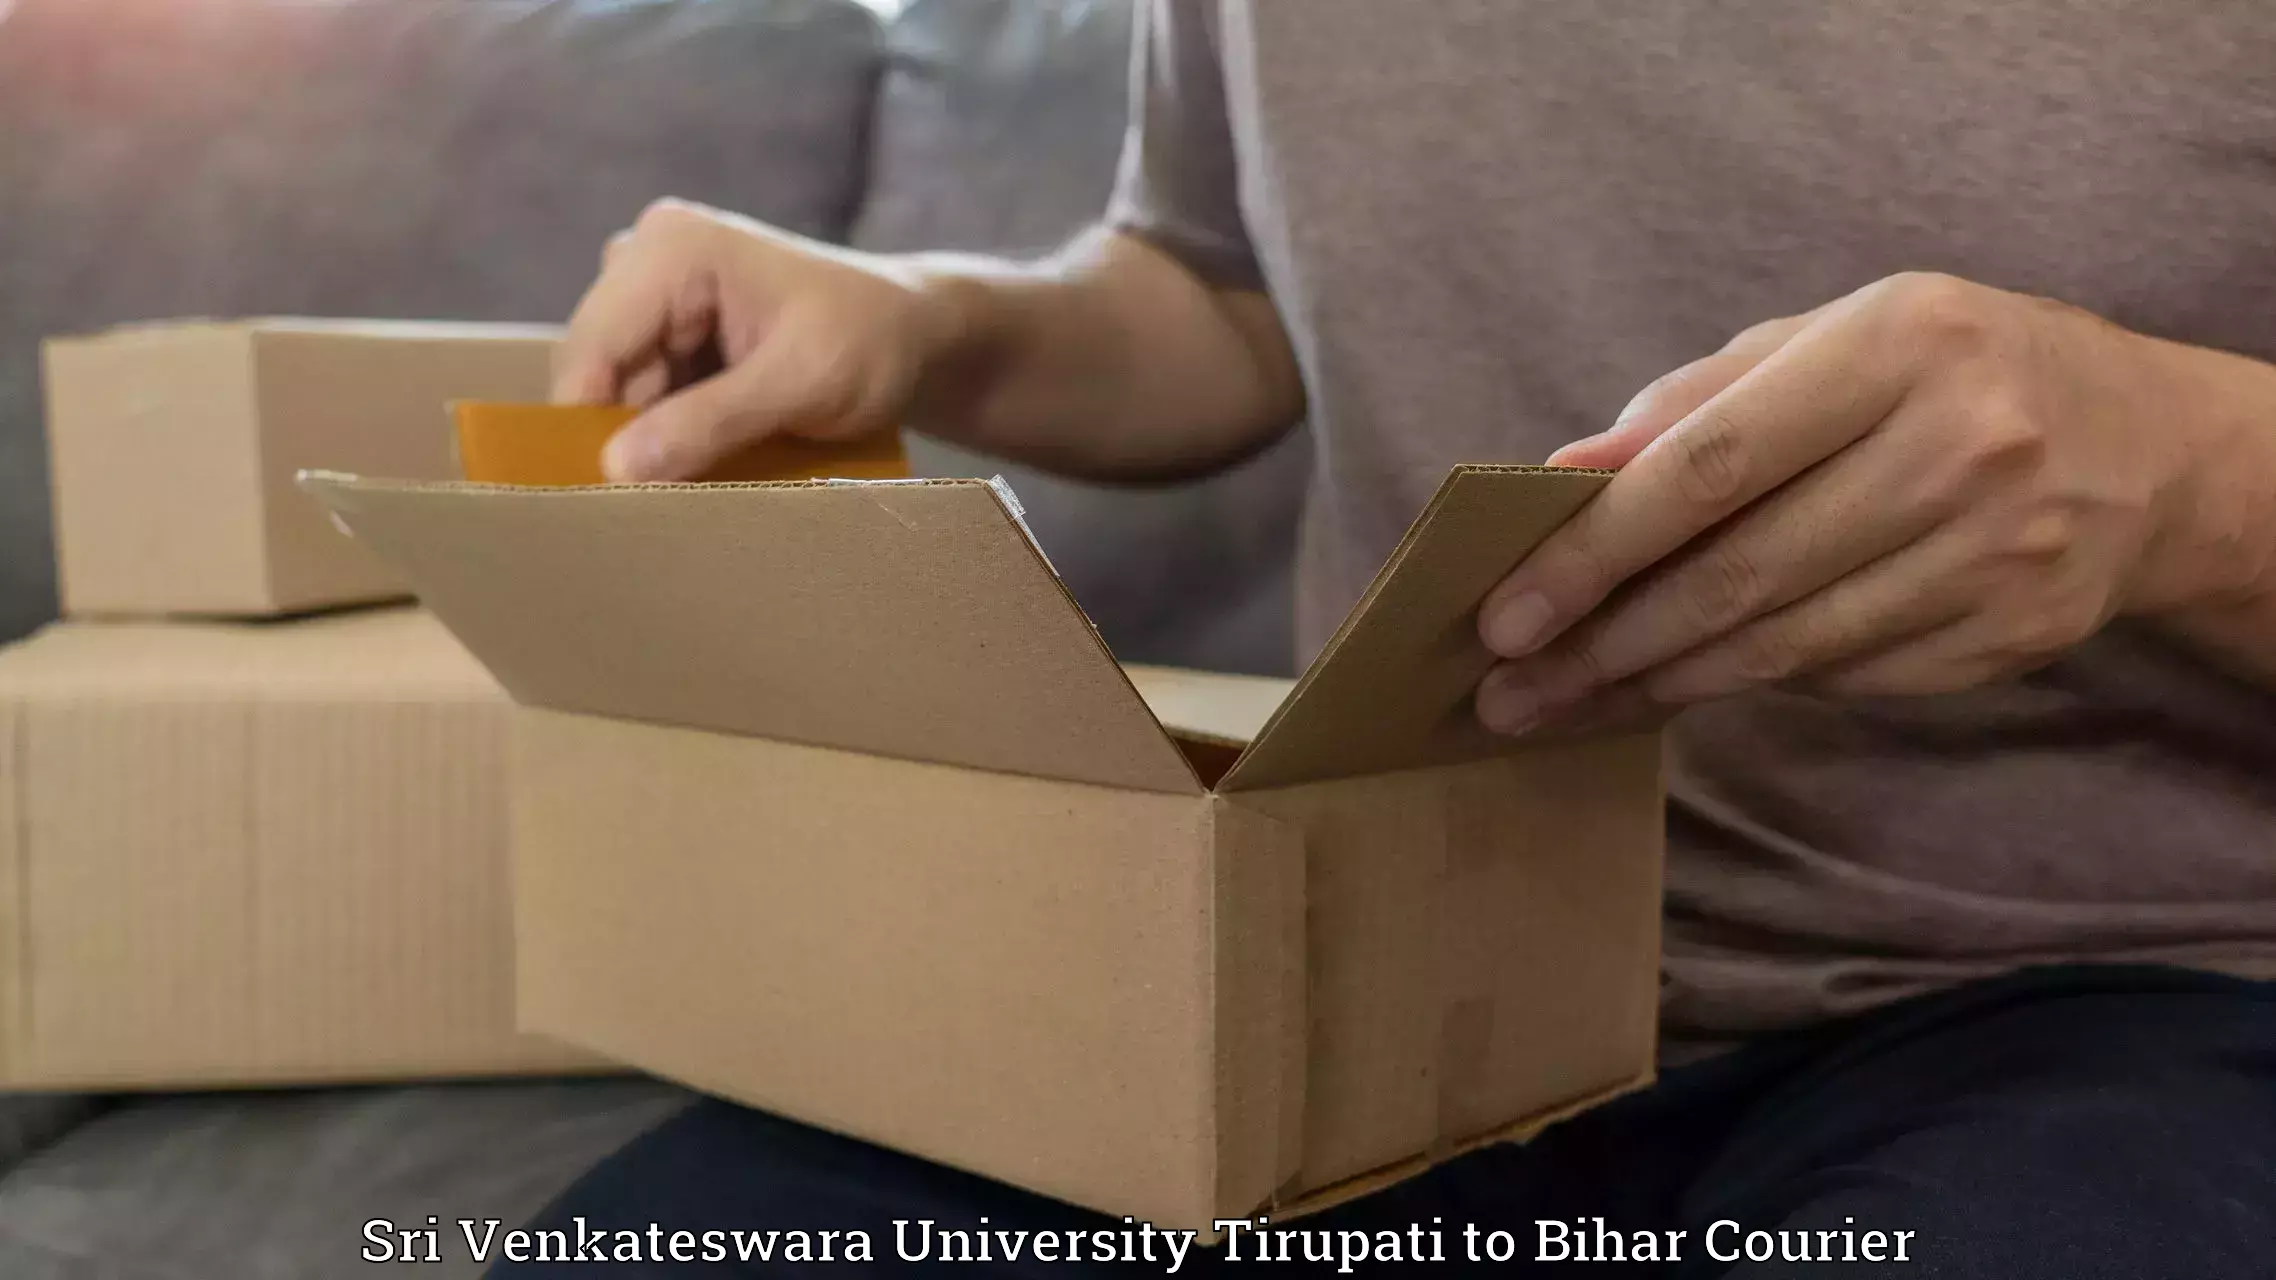 Automated parcel services Sri Venkateswara University Tirupati to Khizarsarai